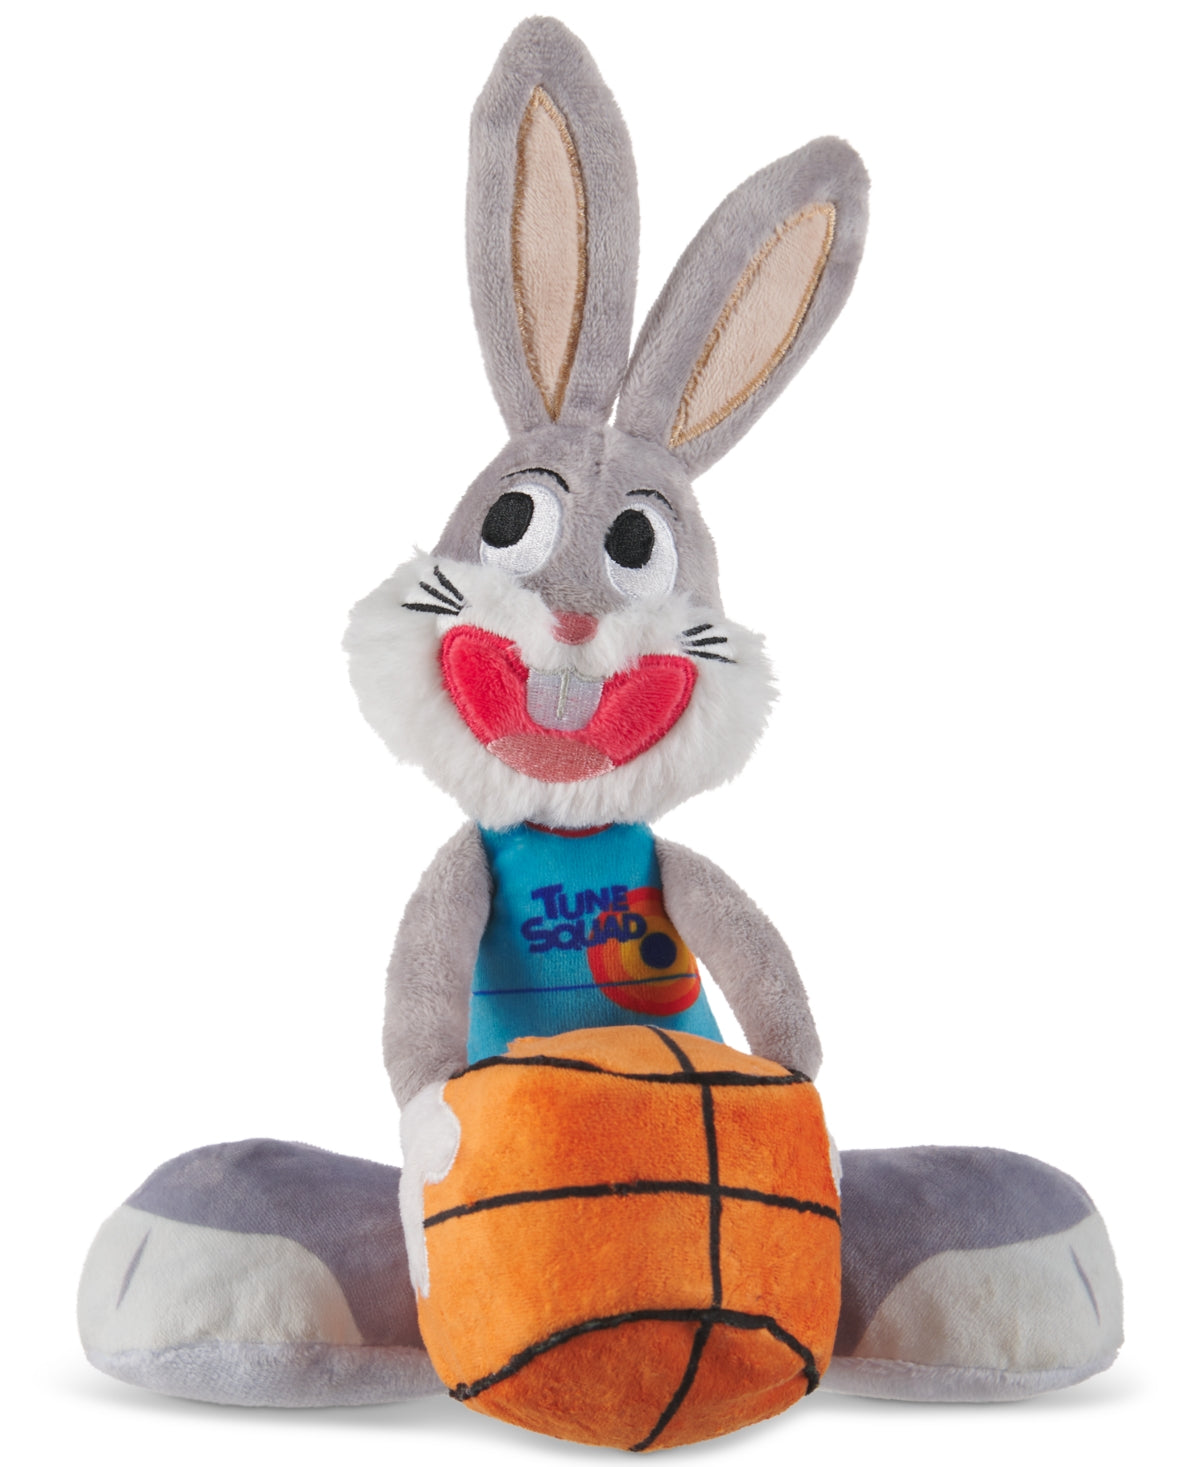 BarkBox Space Jam Bugs Bunny Plush Pet Toy - Grey